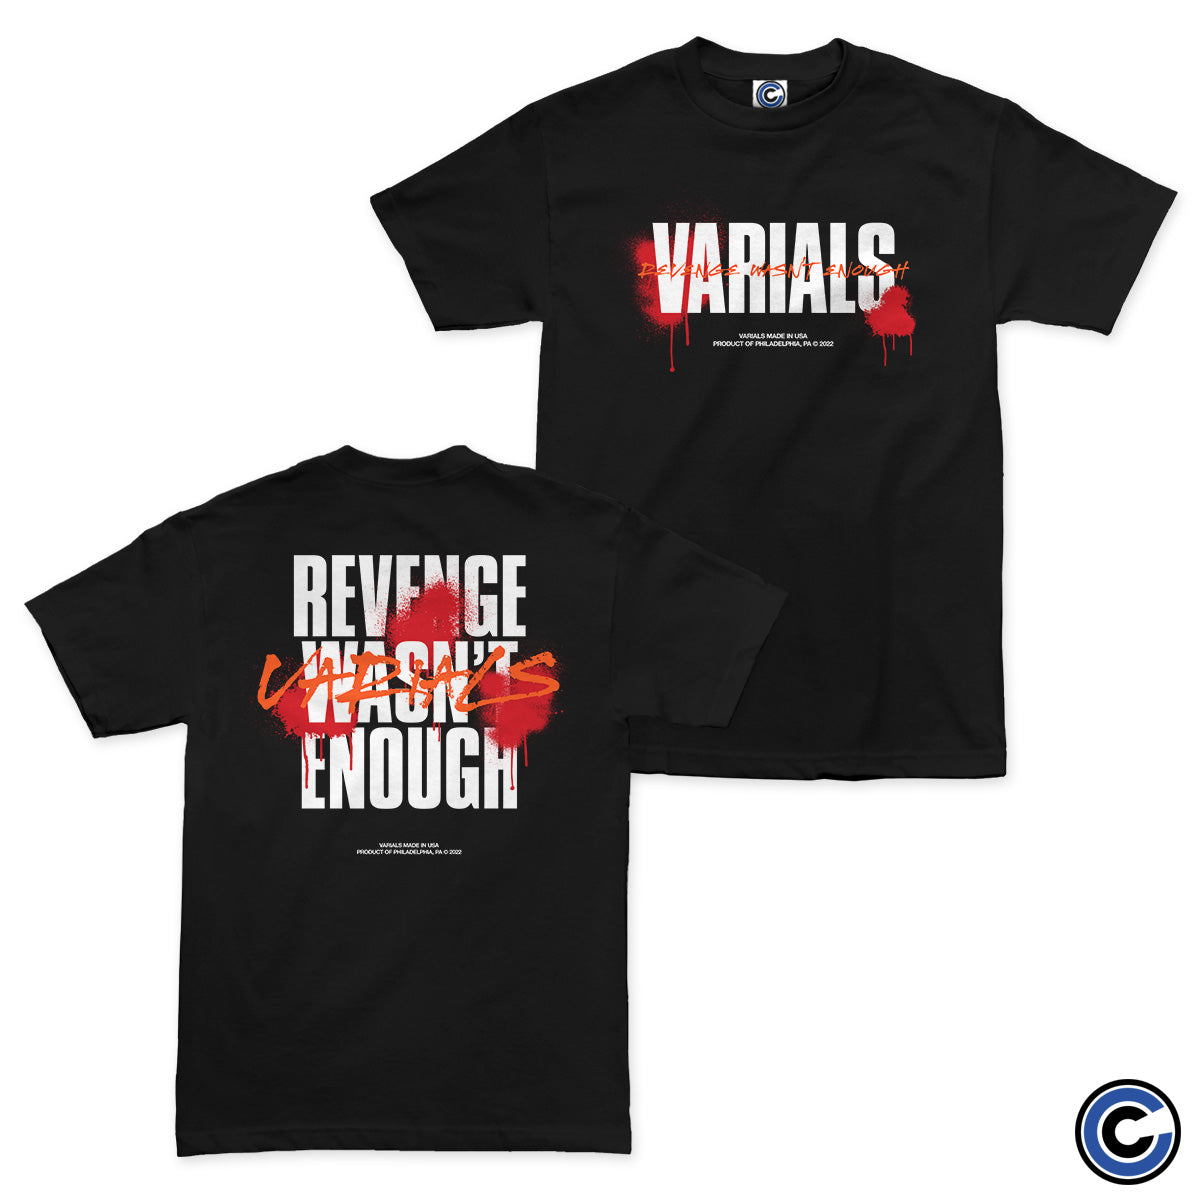 Varials "Revenge" Shirt